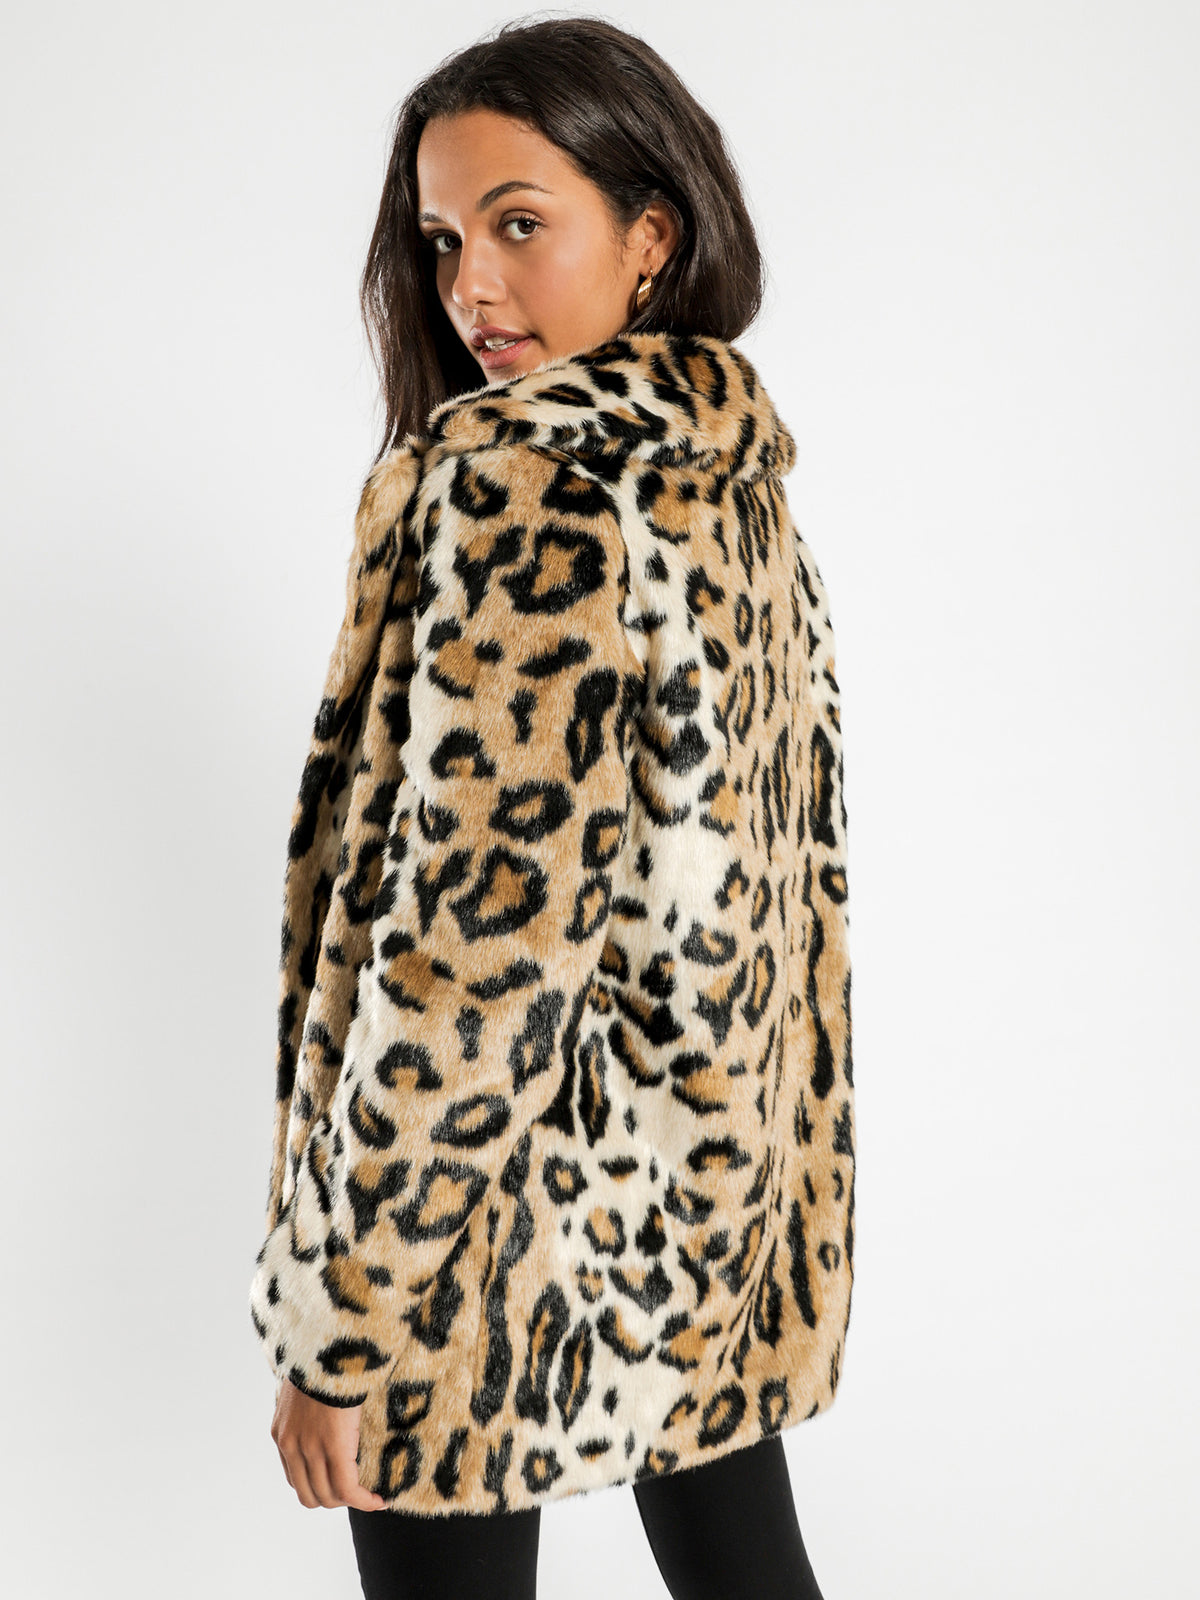 Minimalist Faux Fur Jacket in Leopard